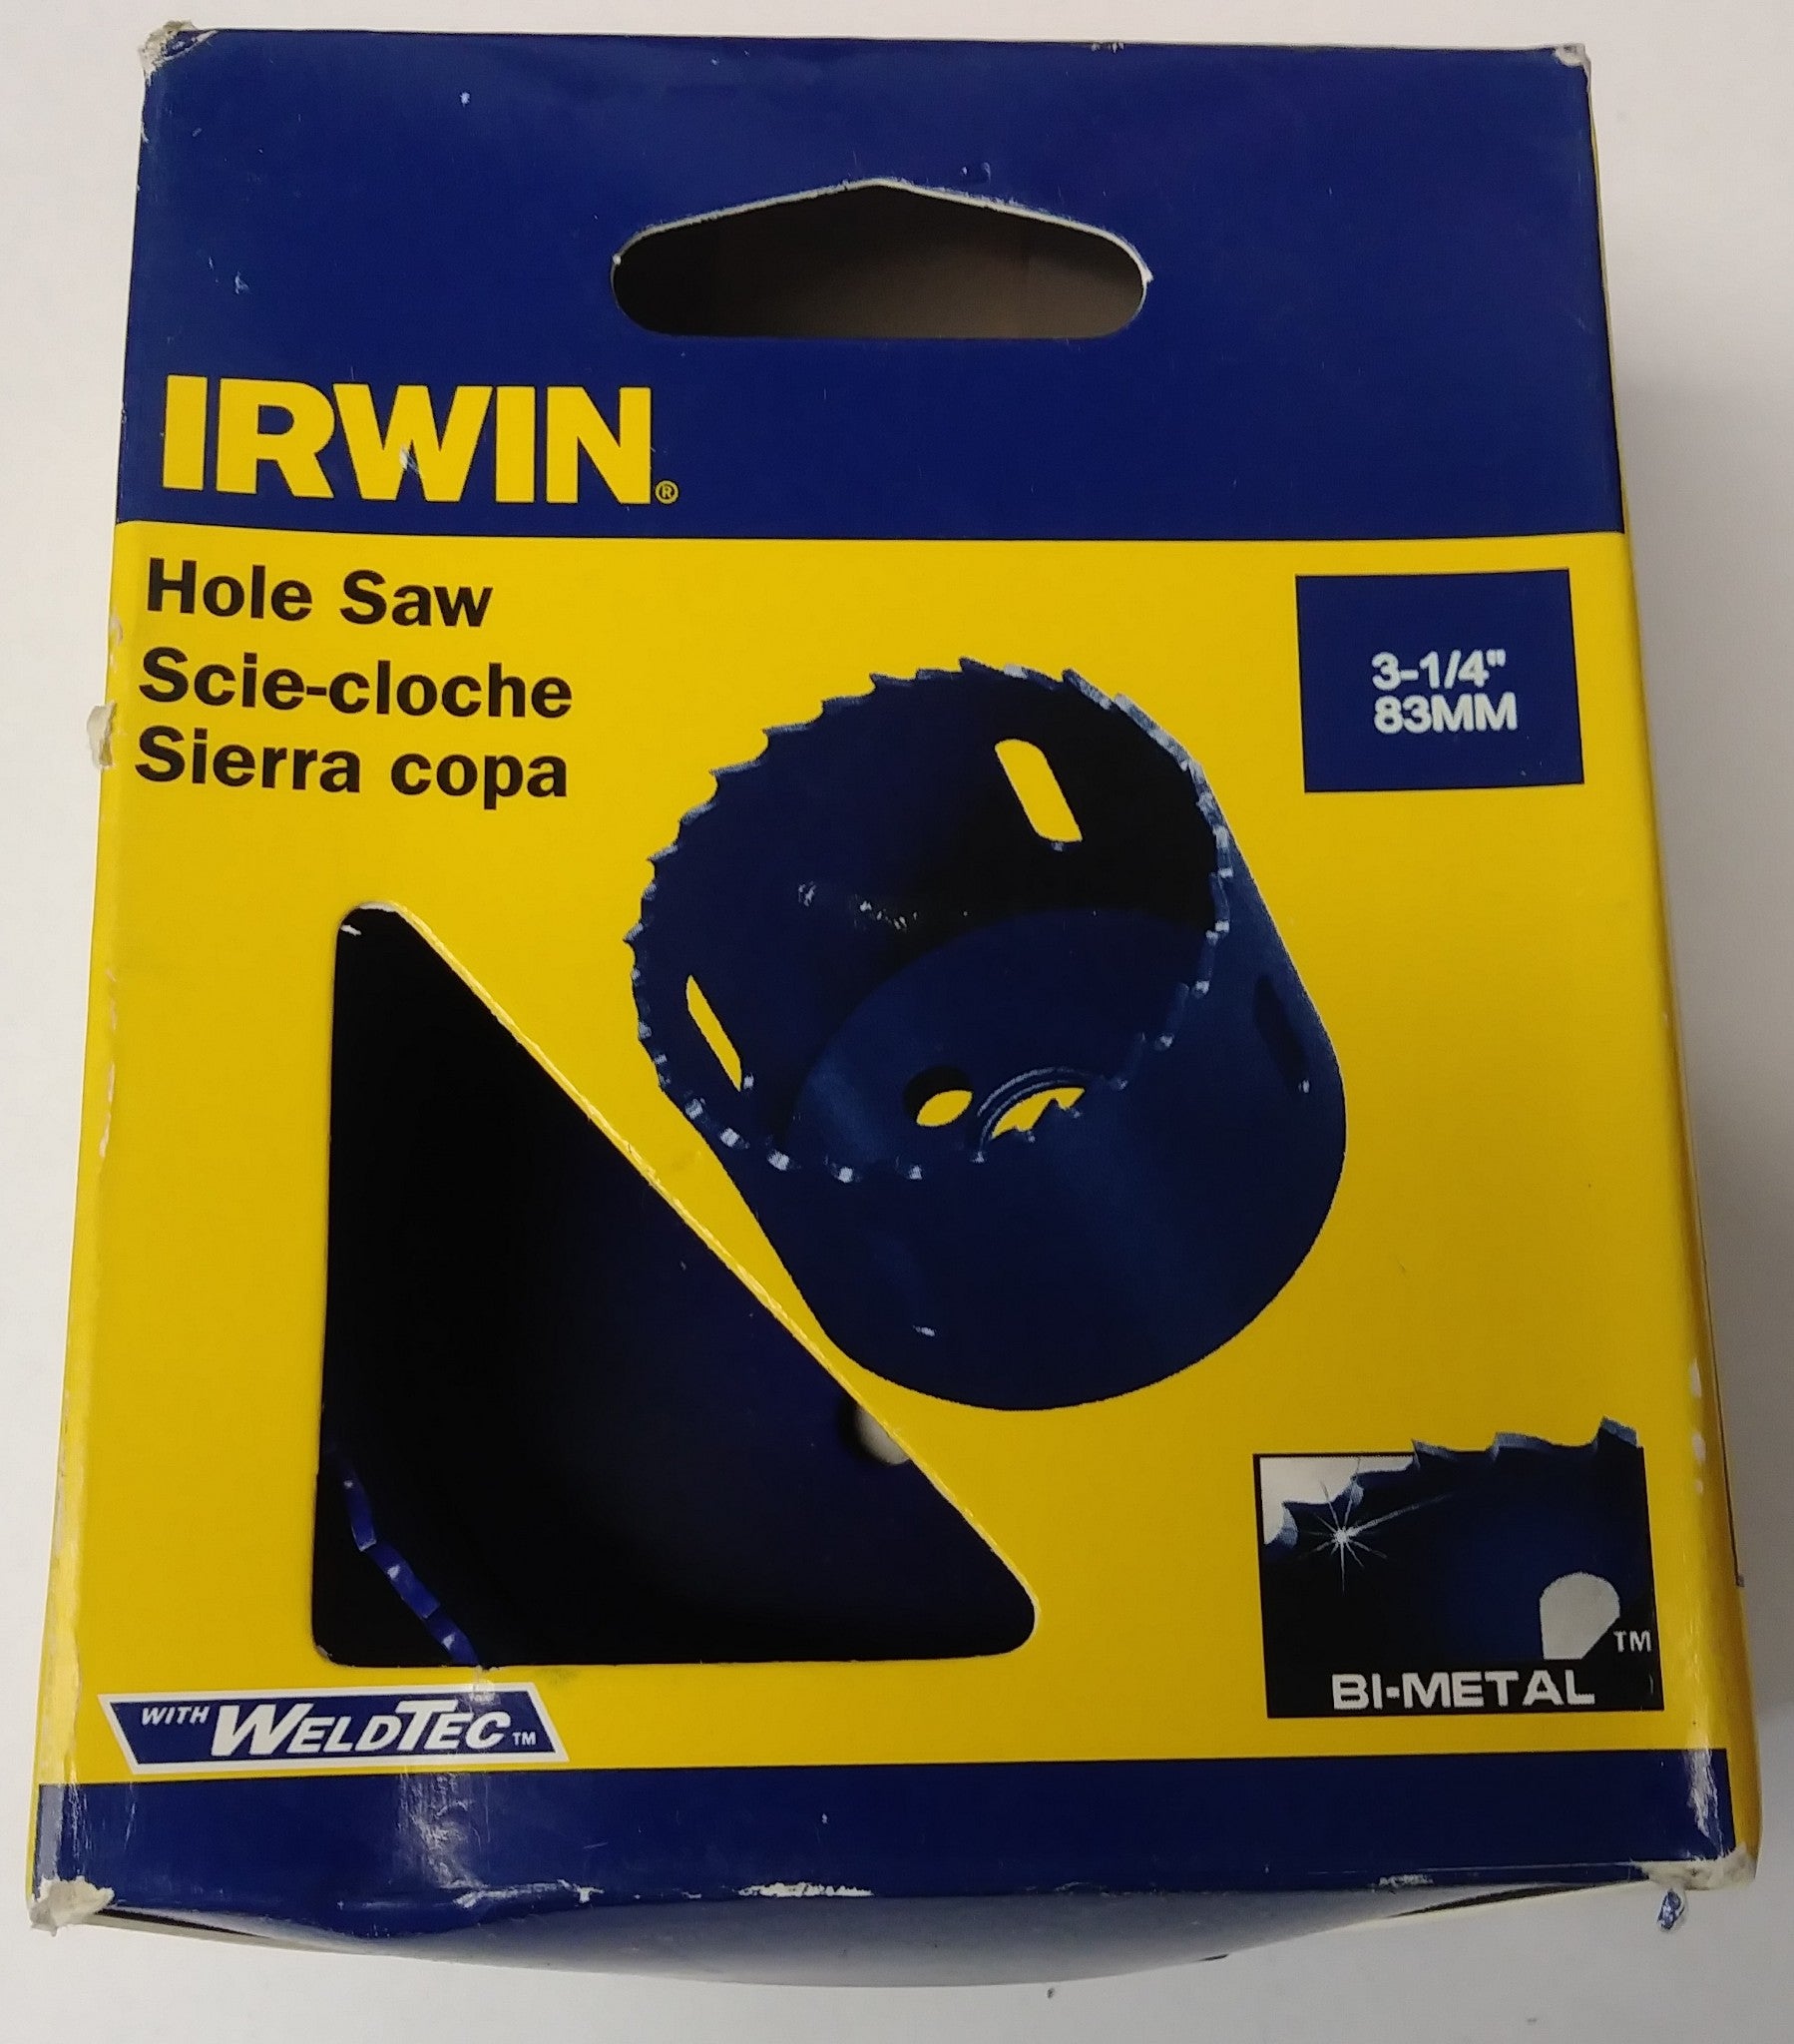 Irwin 373314BX 3-1/4" Bi-Metal Hole Saw